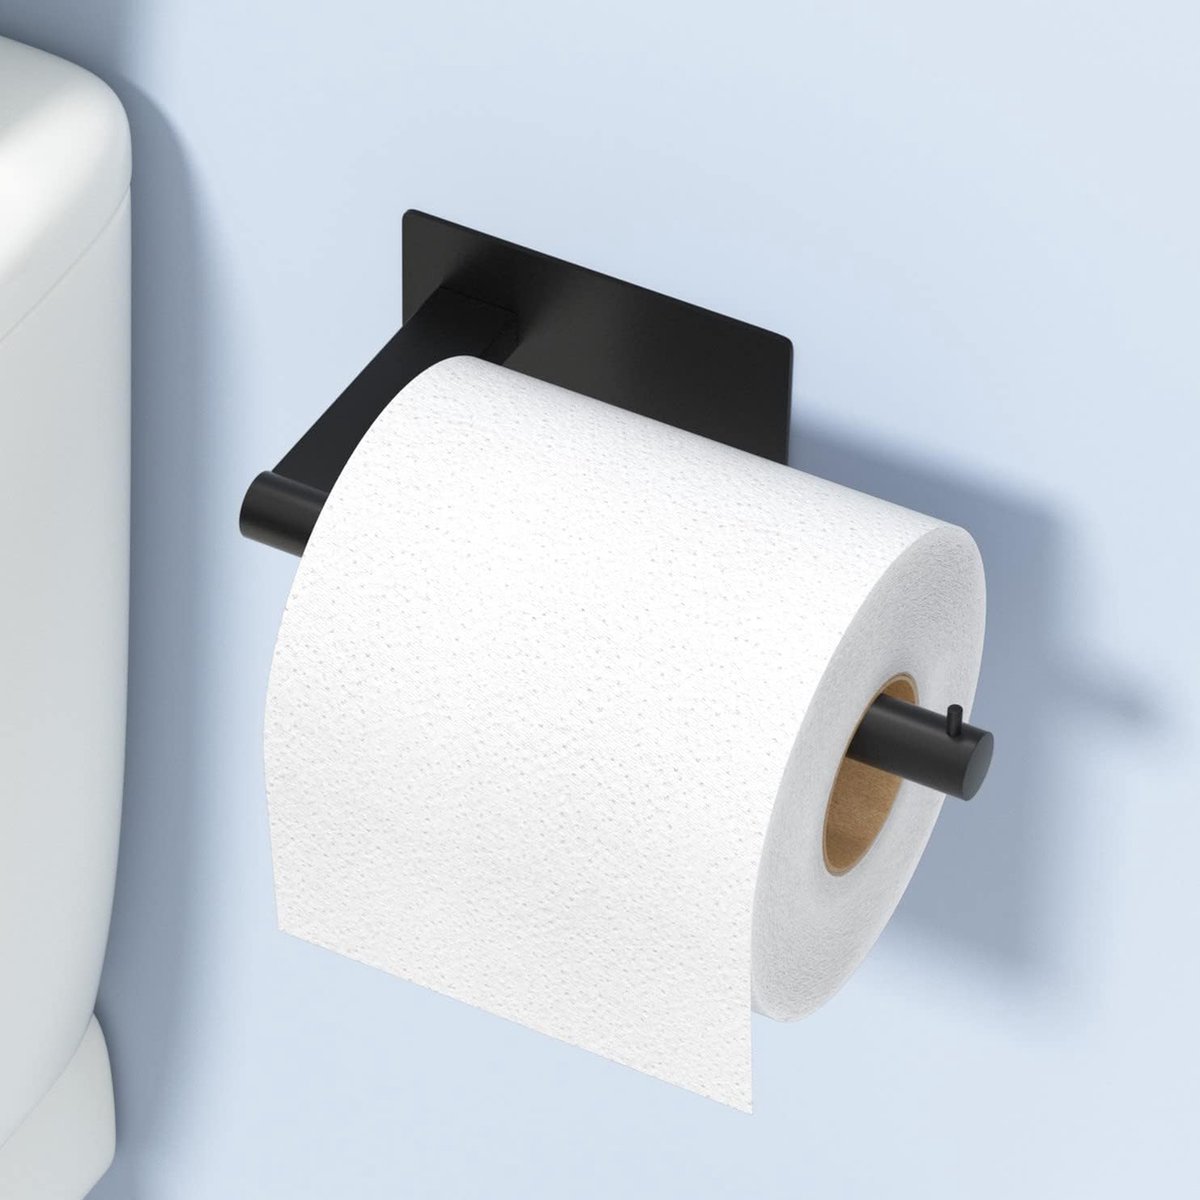 RVS toiletpapierhouder - Zwart - Zonder boren - Toiletrolhouder - Wcpapierhouder - Roestvrij staal - Wcpapierrolhouder - Zelfklevend - Toilet - Badkamer